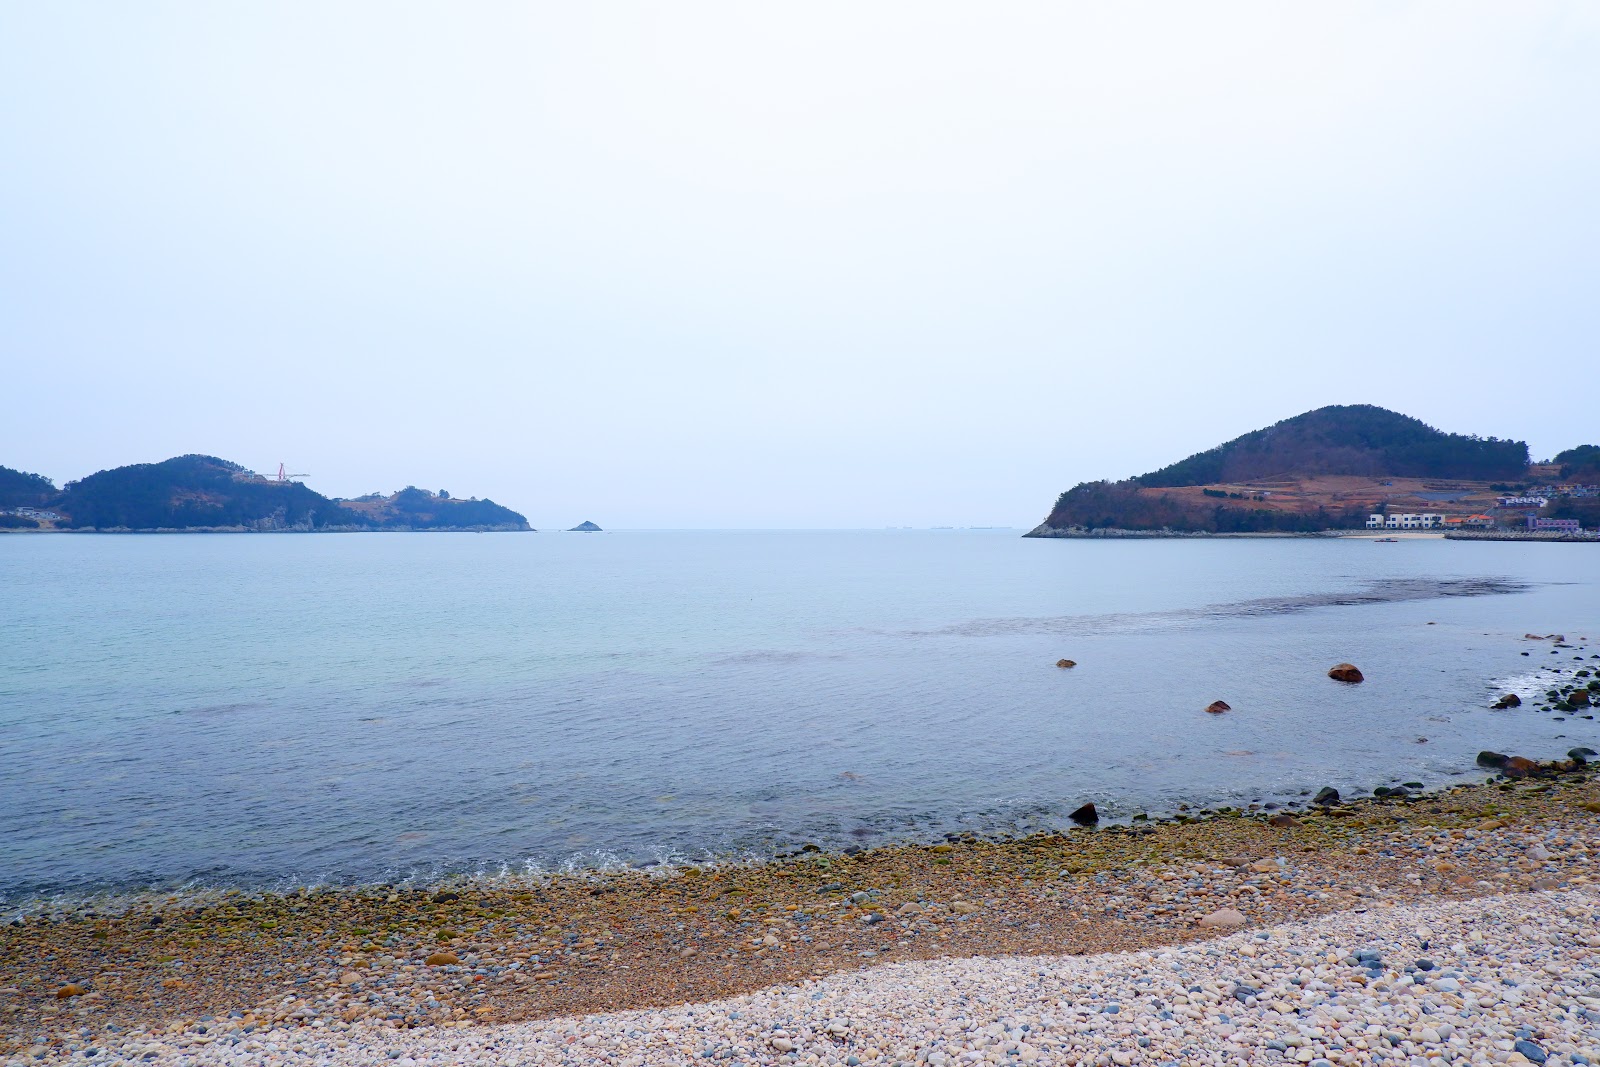 Cheonha Beach'in fotoğrafı gri çakıl taşı yüzey ile